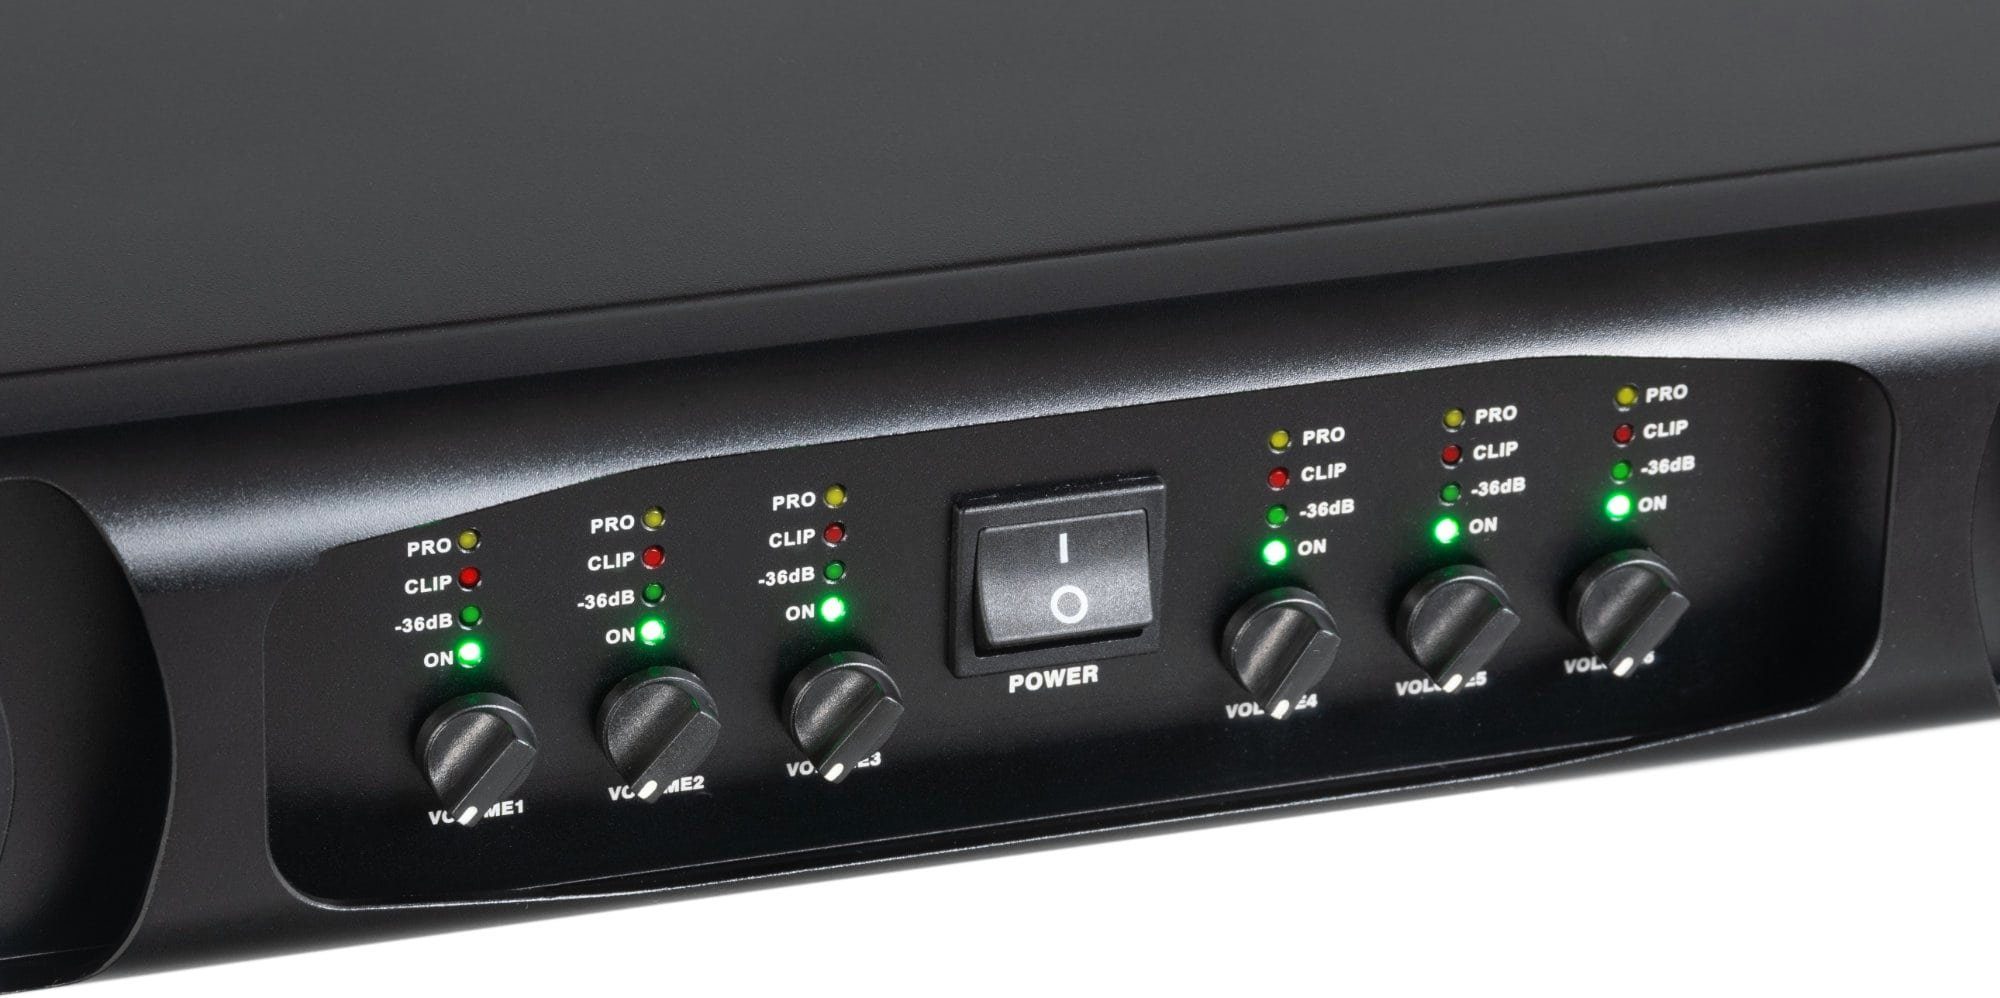 Pronomic MC6-400 Endstufe W, mit 3600 Schaltung Grenzfrequenz) 6, Audioverstärker Watt Endstufe Kanäle: einstellbarer 6x & 600 (Anzahl flexibler